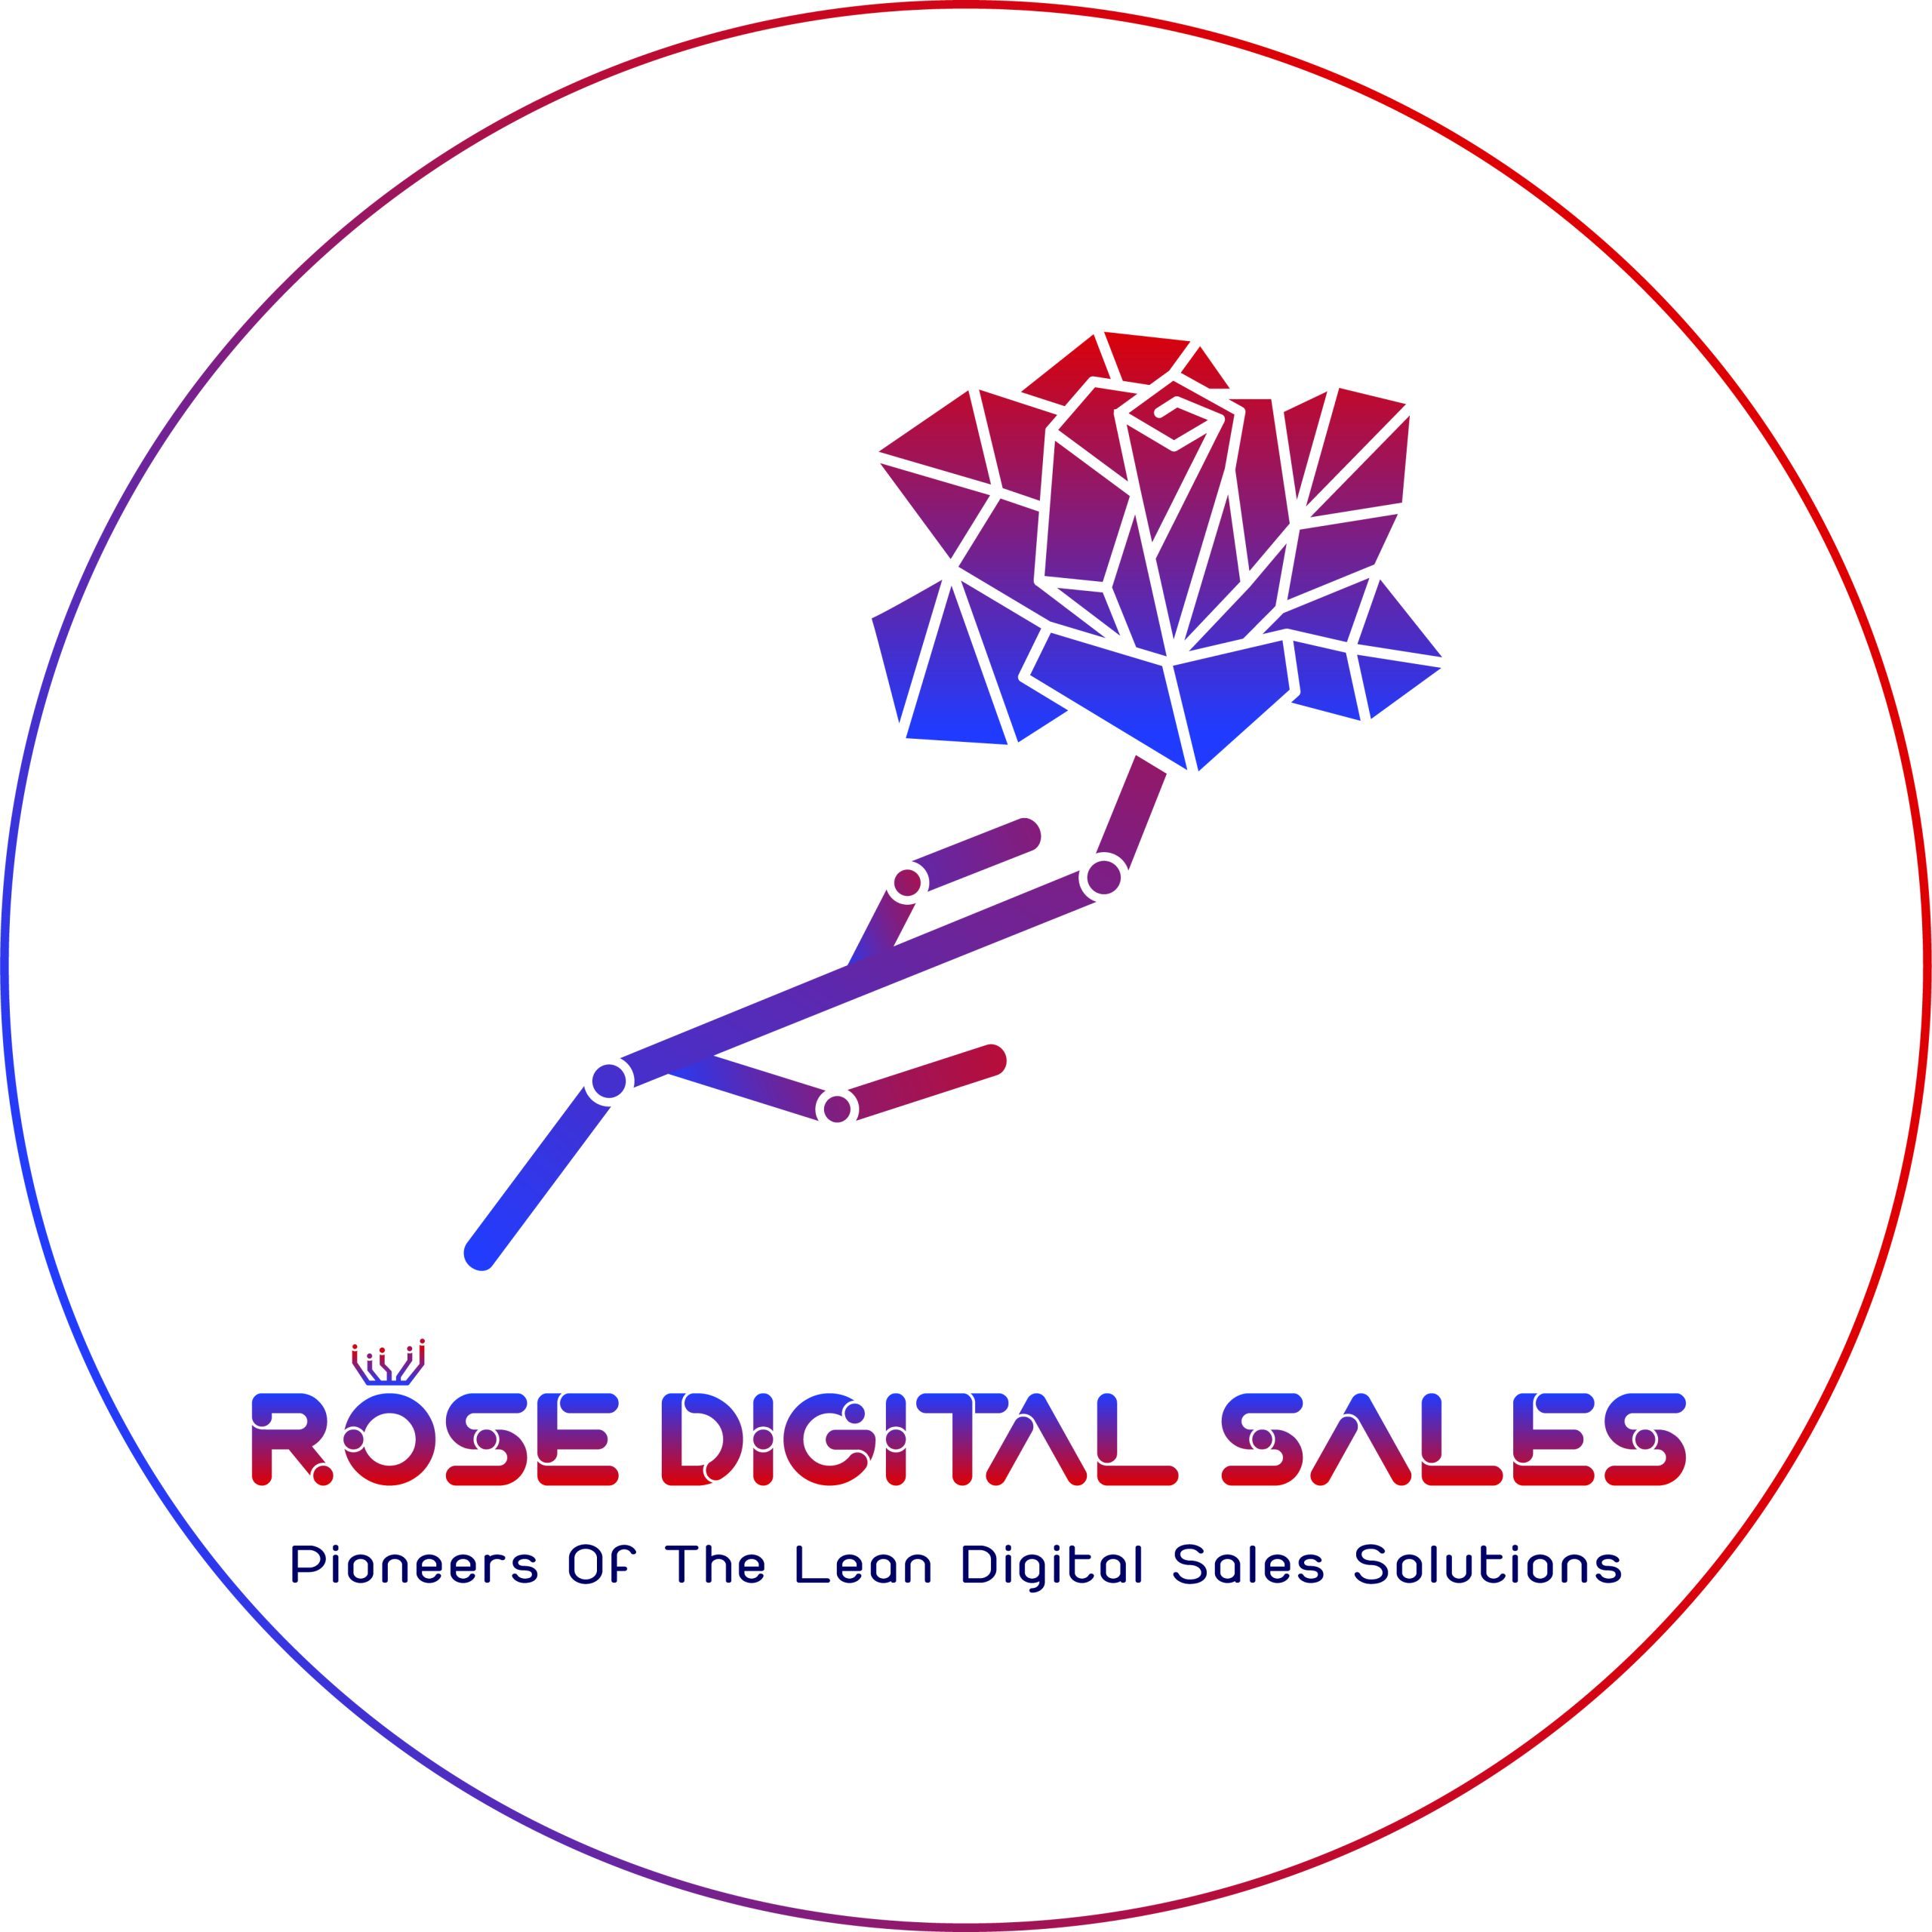 Digital sales